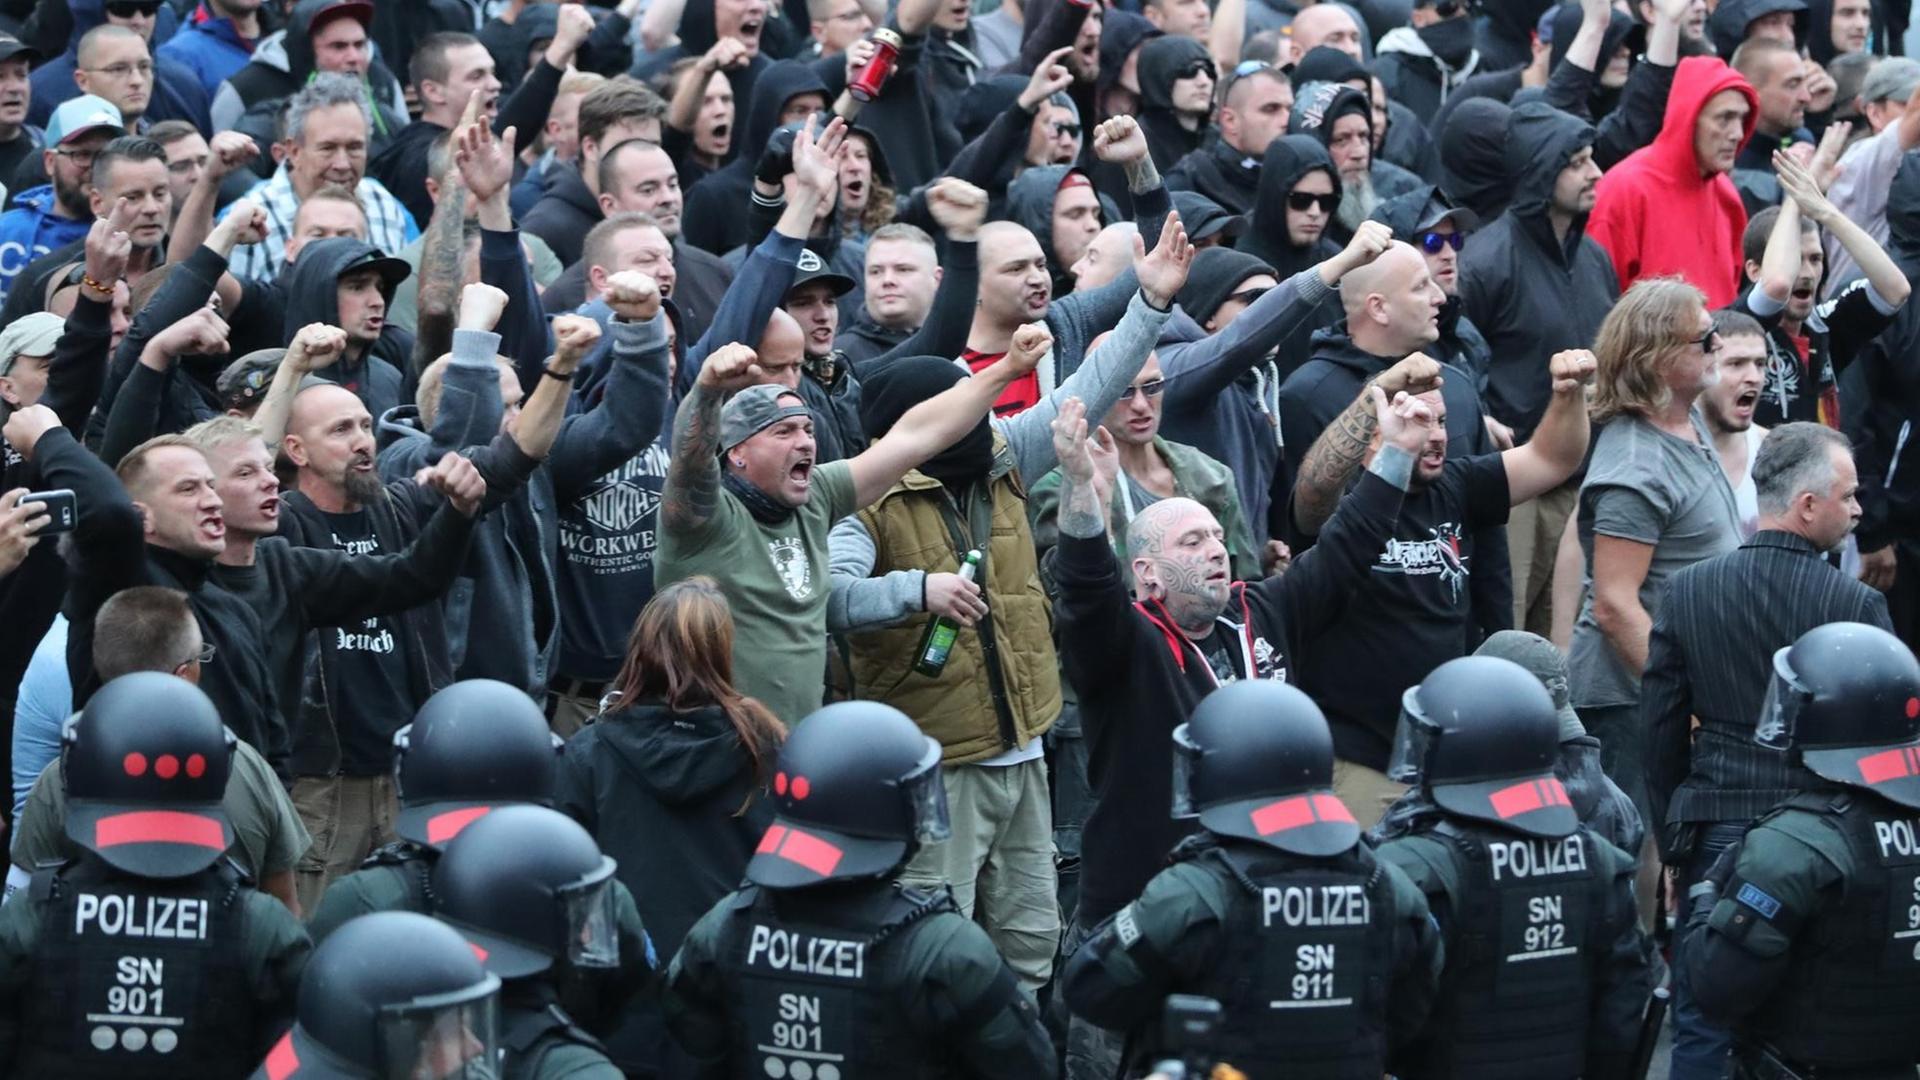 Das Bild zeigt am unteren Rand schwarzgekleidete Polizisten in Kampfmontur mit Helm. Hinter ihnen eine große Menge rechtsgerichteter Demonstranten, viele rufen etwas und halten die geballten Fäuste nach oben. Man sieht viele hassverzerrte Gesichter unter ihnen.